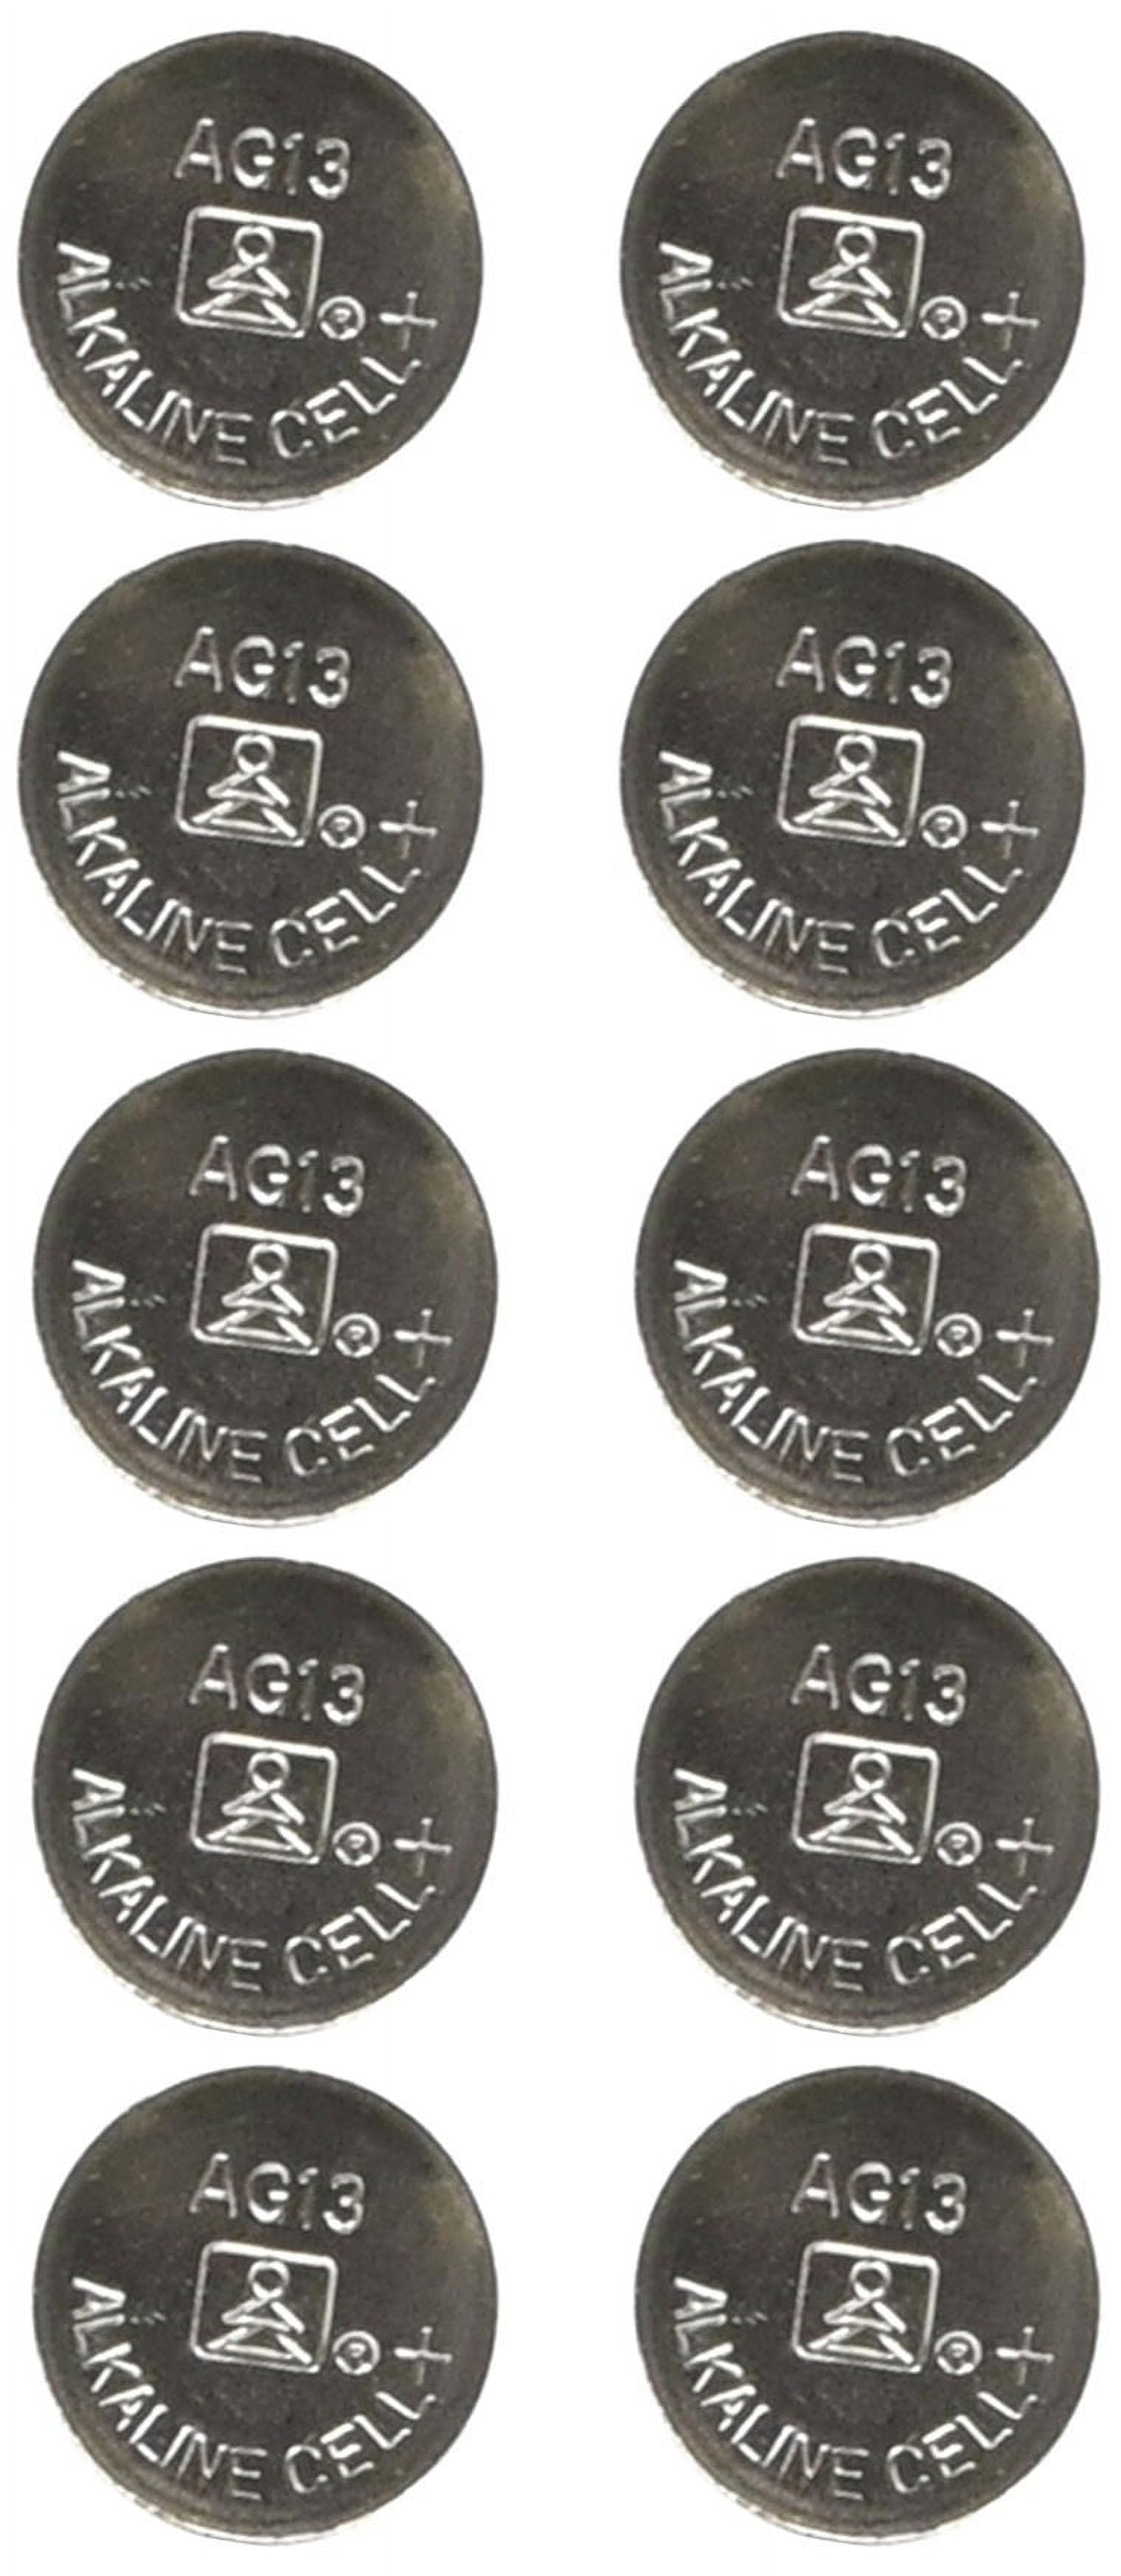 Lot de 40 piles bouton AG13 LR44, 1,5 V, Alcaline sans mercure  (357/357A/L1154/A76/GPA76).